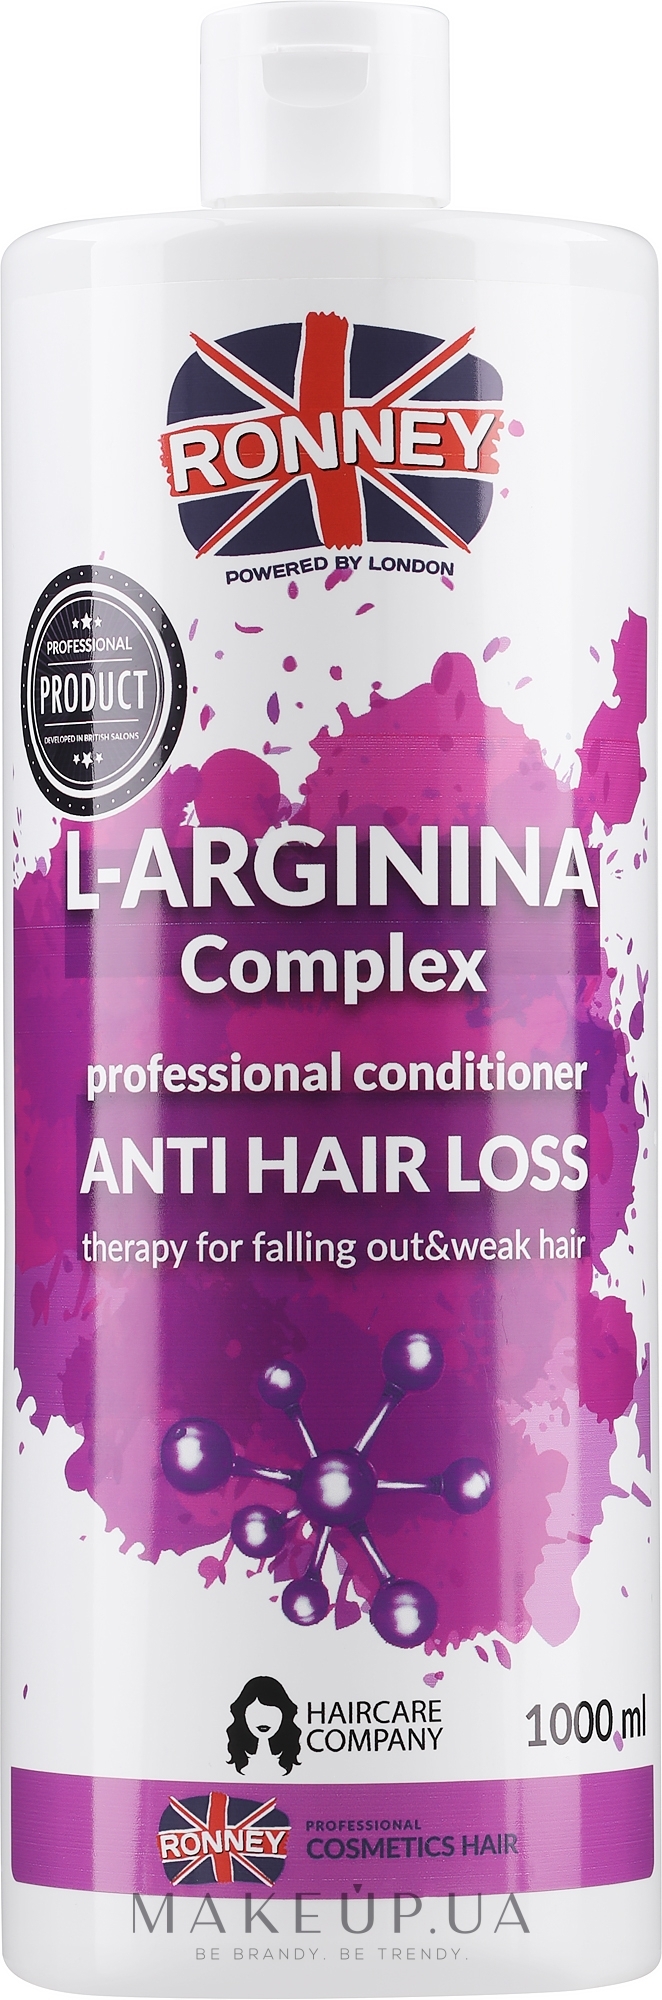 Кондиционер для ослабленных волос - Ronney Professional L-arginina Complex Anti Hair Loss Therapy Conditioner — фото 1000ml